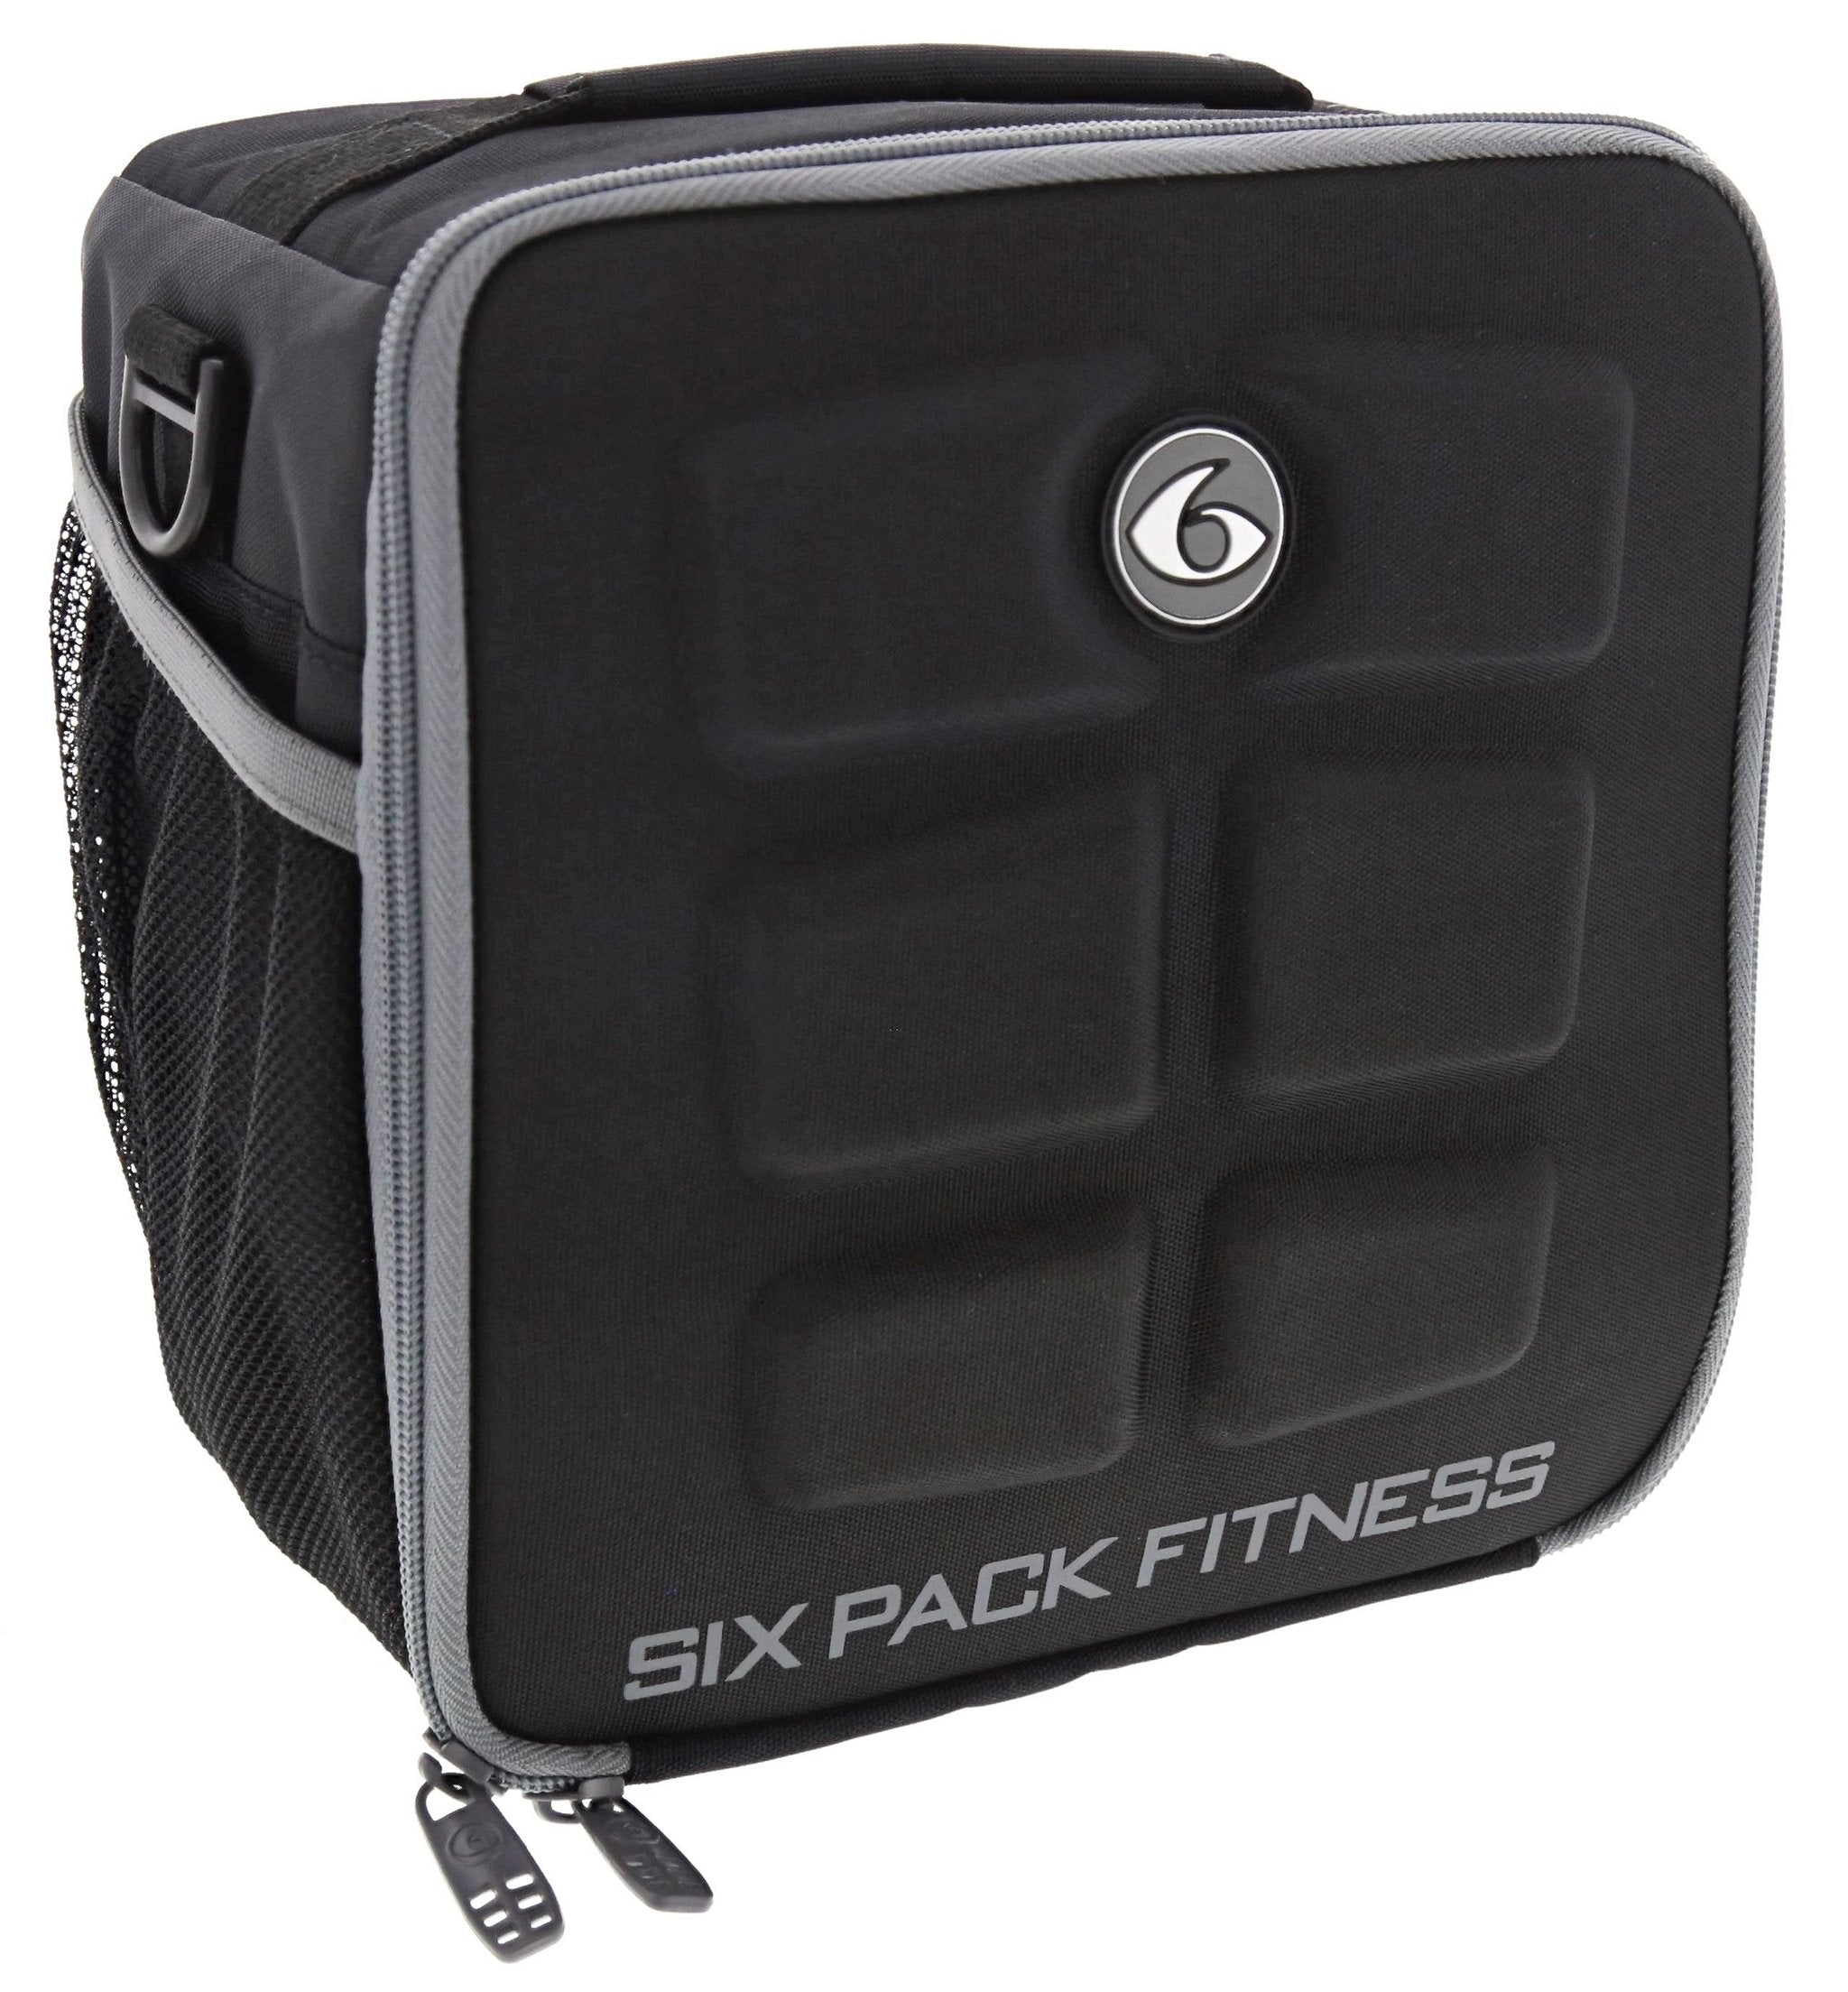 Pack Fitness Cube Shoulder Bag - PureBulk, Inc.